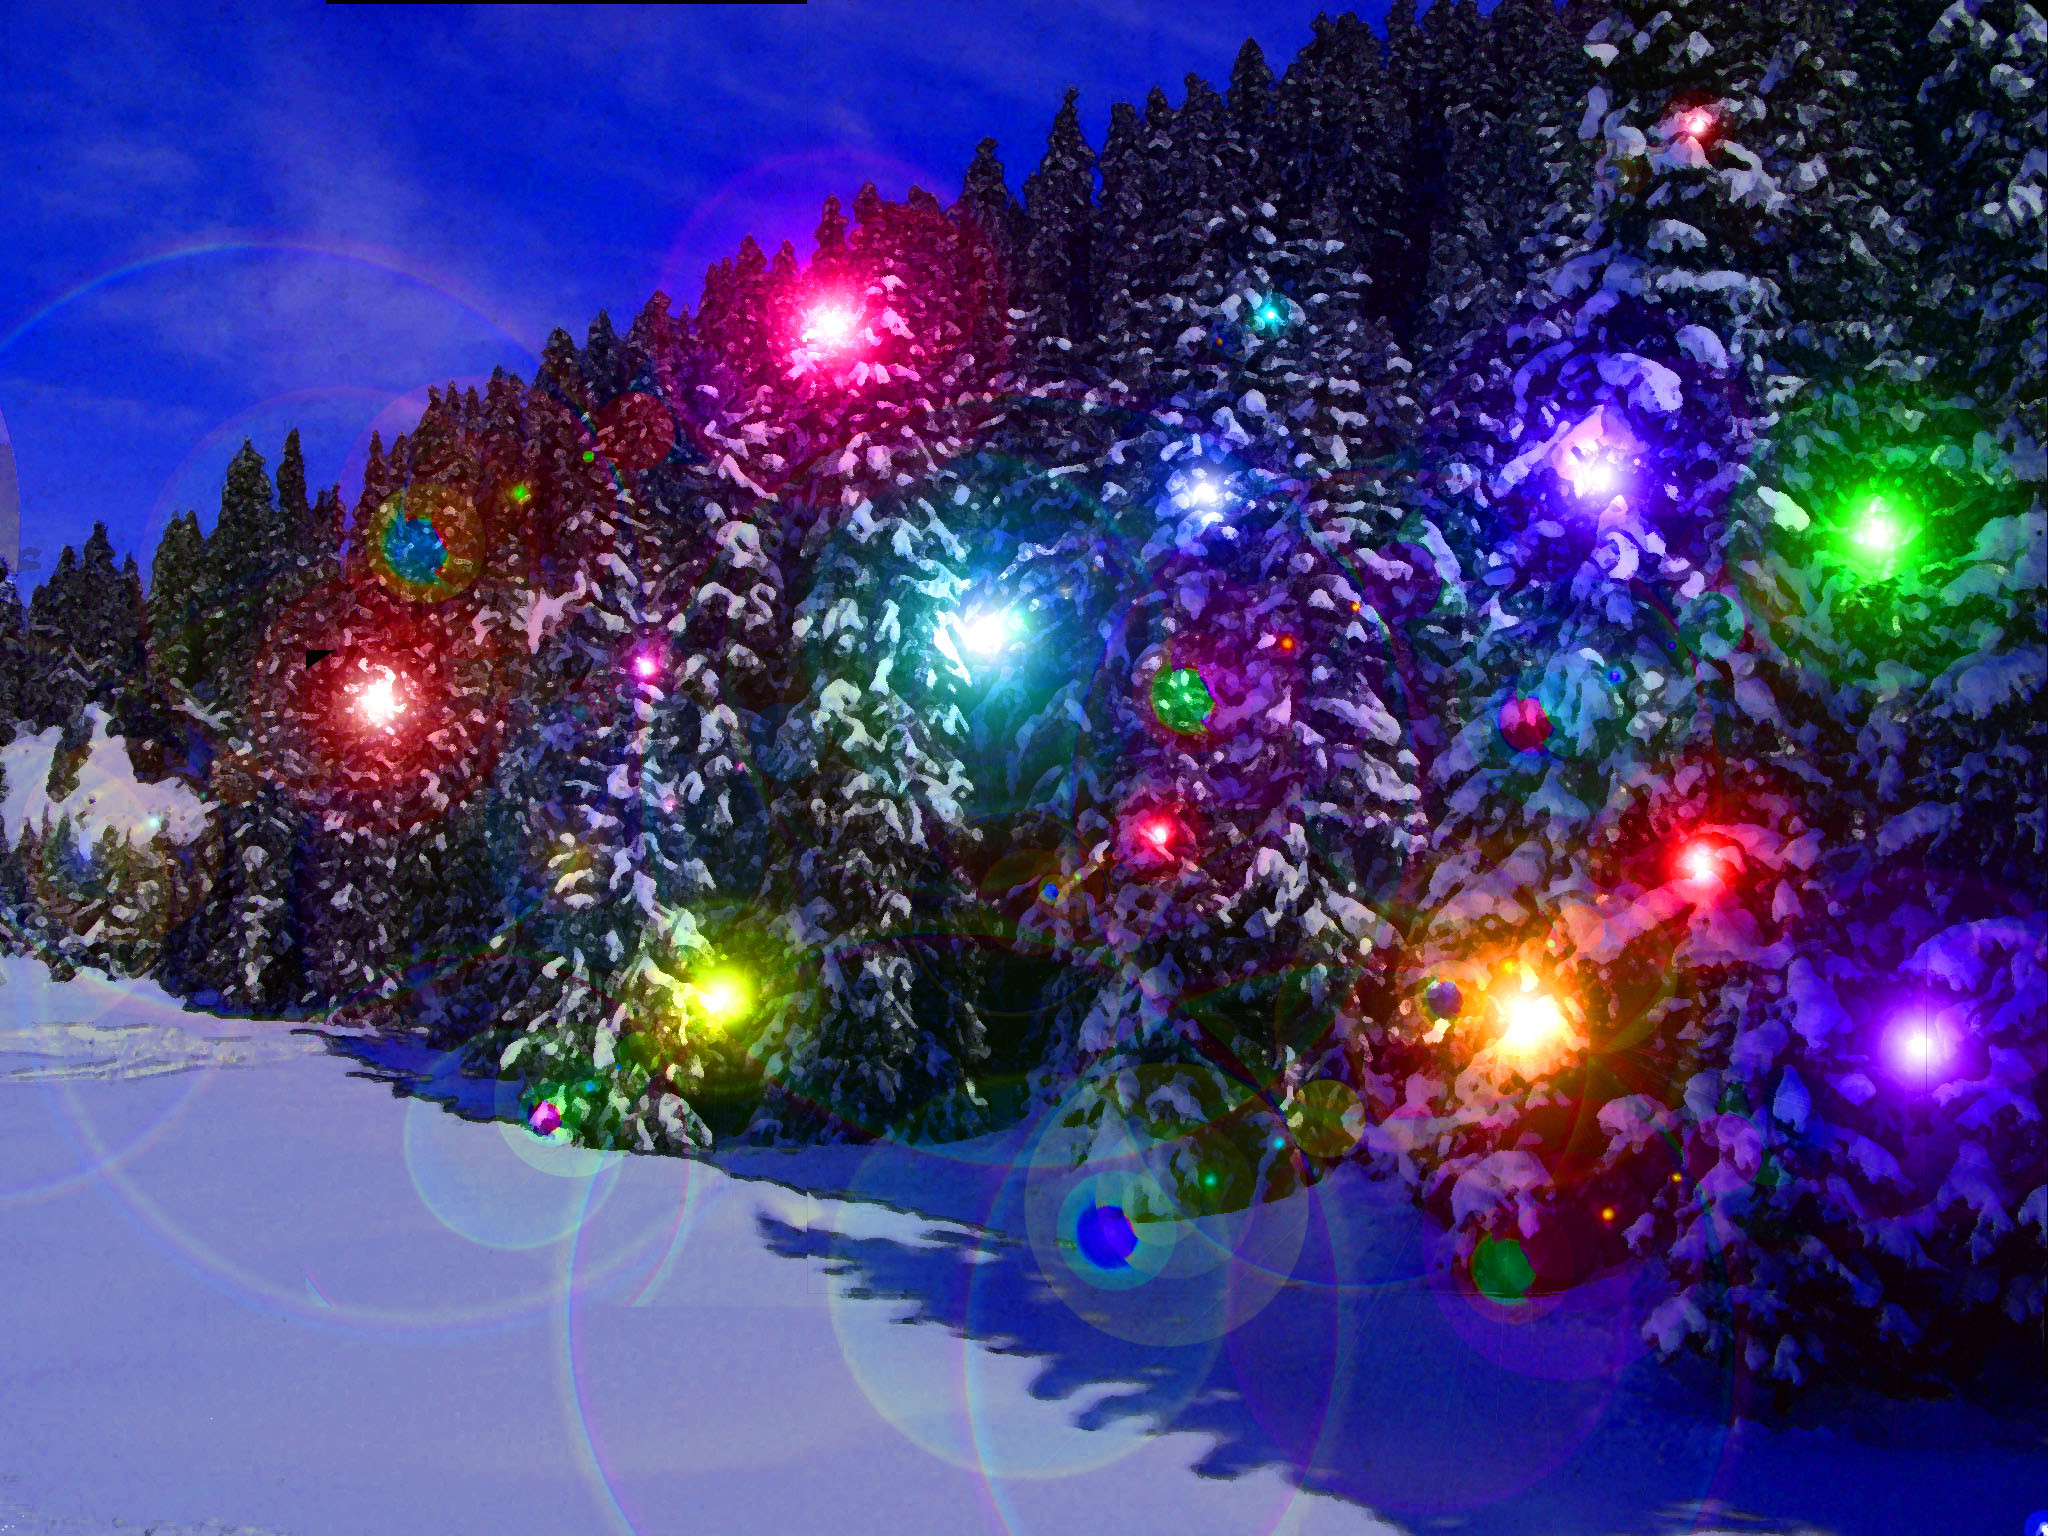 carta da parati delle luci di natale,leggero,blu,decorazione natalizia,albero di natale,albero